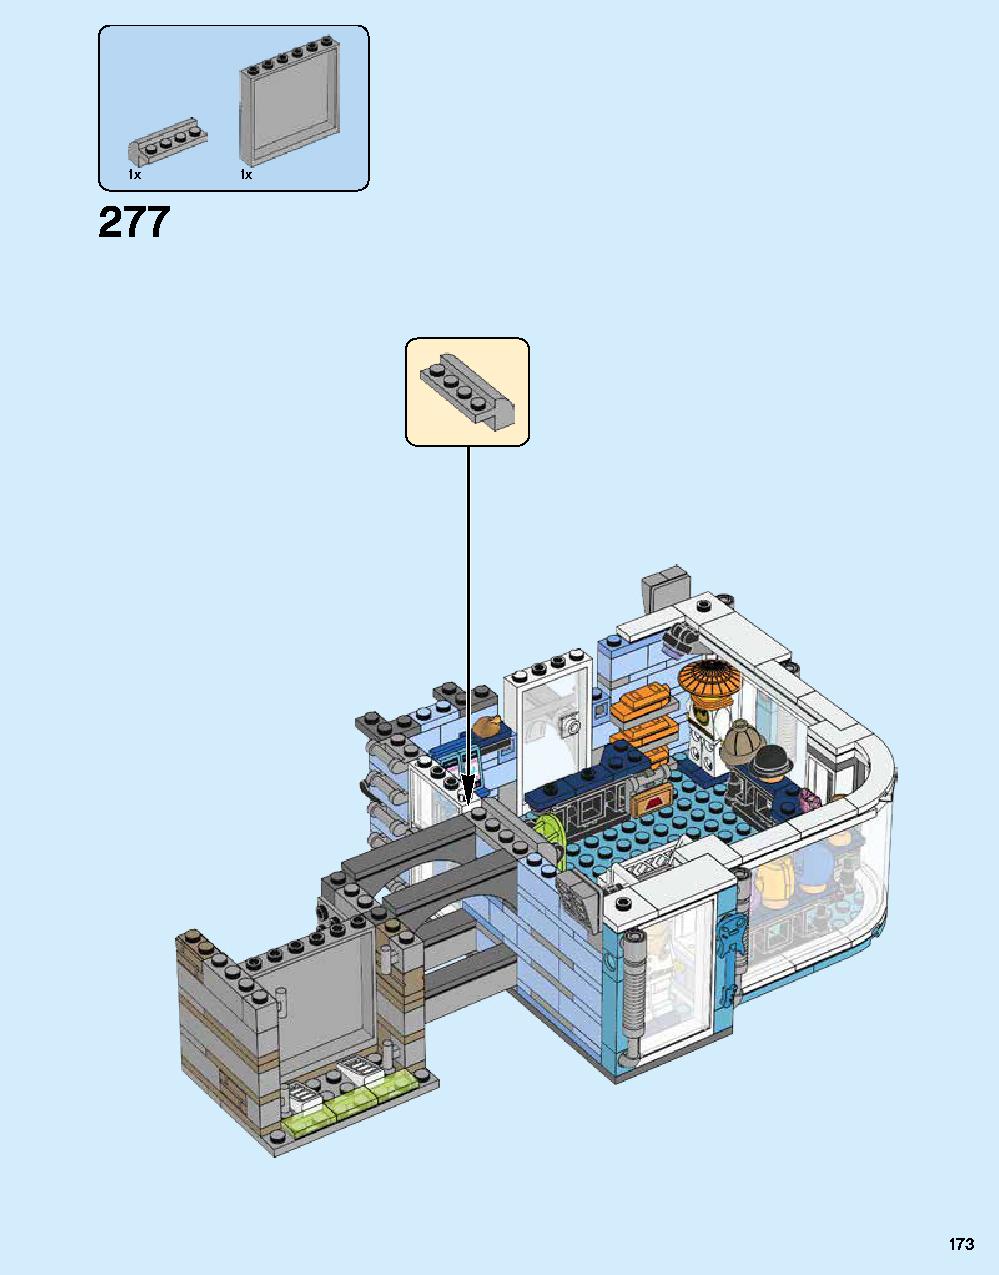 ニンジャゴー シティ 70620 レゴの商品情報 レゴの説明書・組立方法 173 page